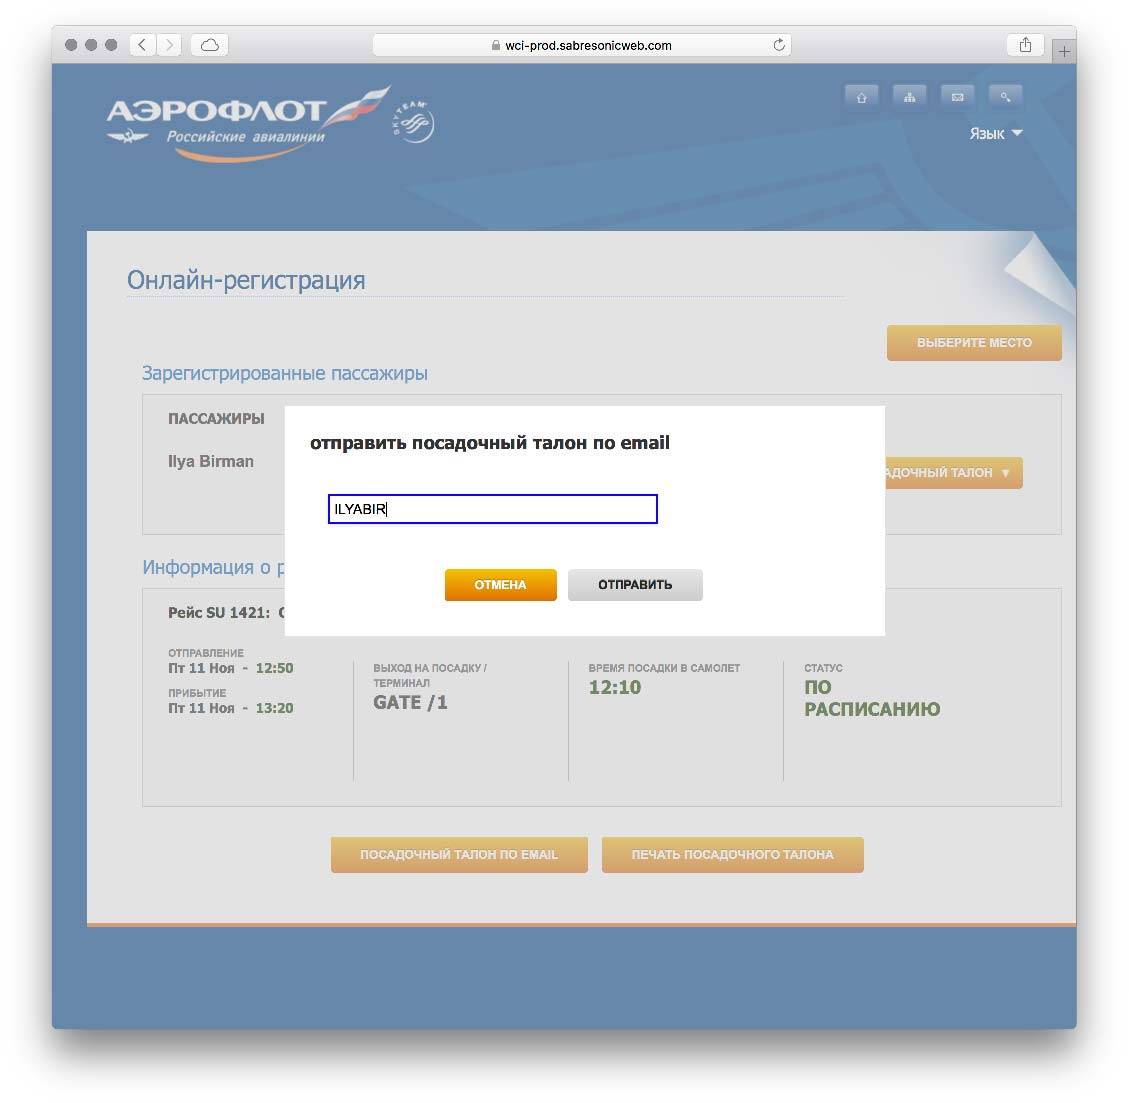 Регистрация на рейс аэрофлот в шереметьево онлайн: по номеру билета, электронная, бесплатно, за сколько часов, бронирование места